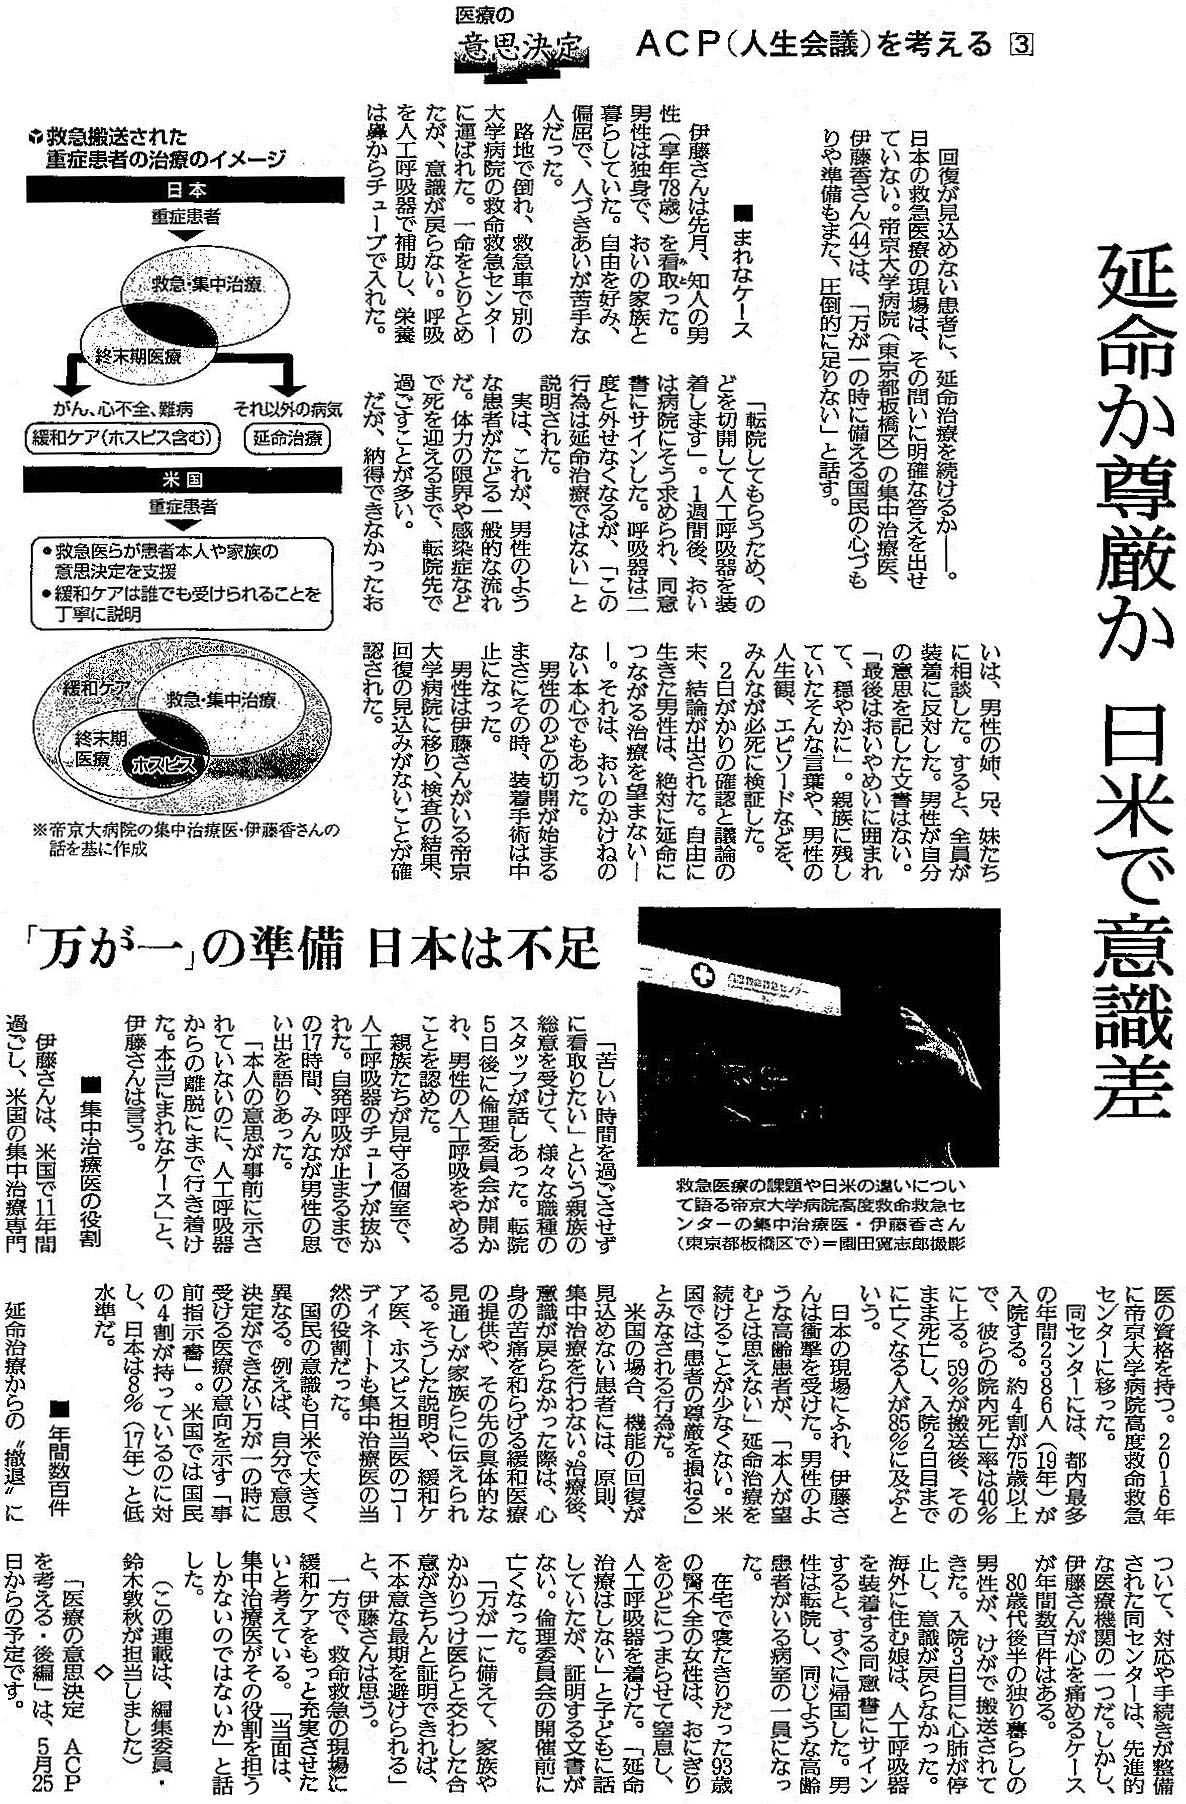 読売新聞 2020年4月20日掲載記事